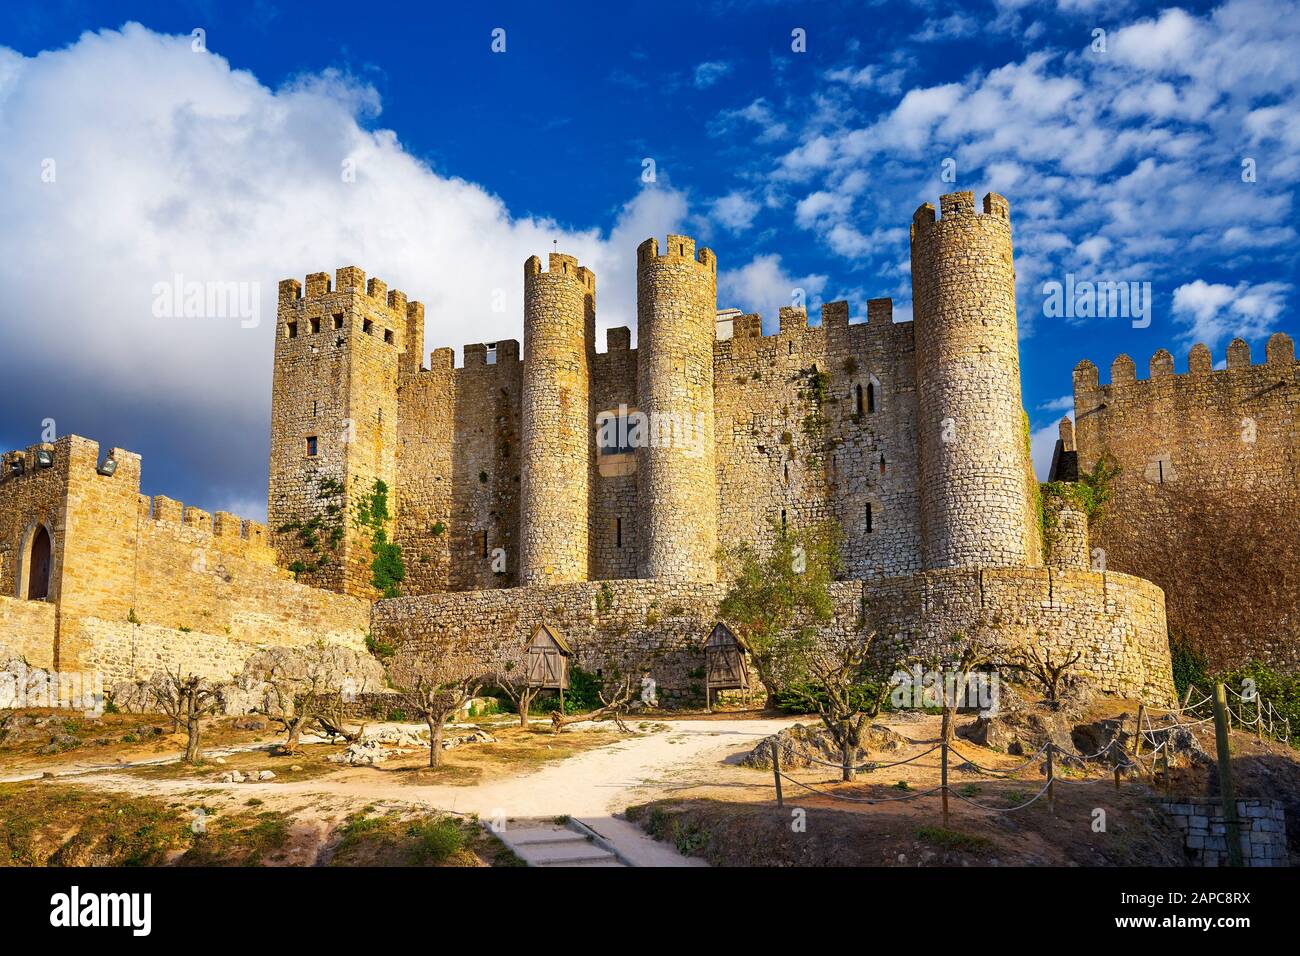 Obidos Castle, Portugal Stock Photo